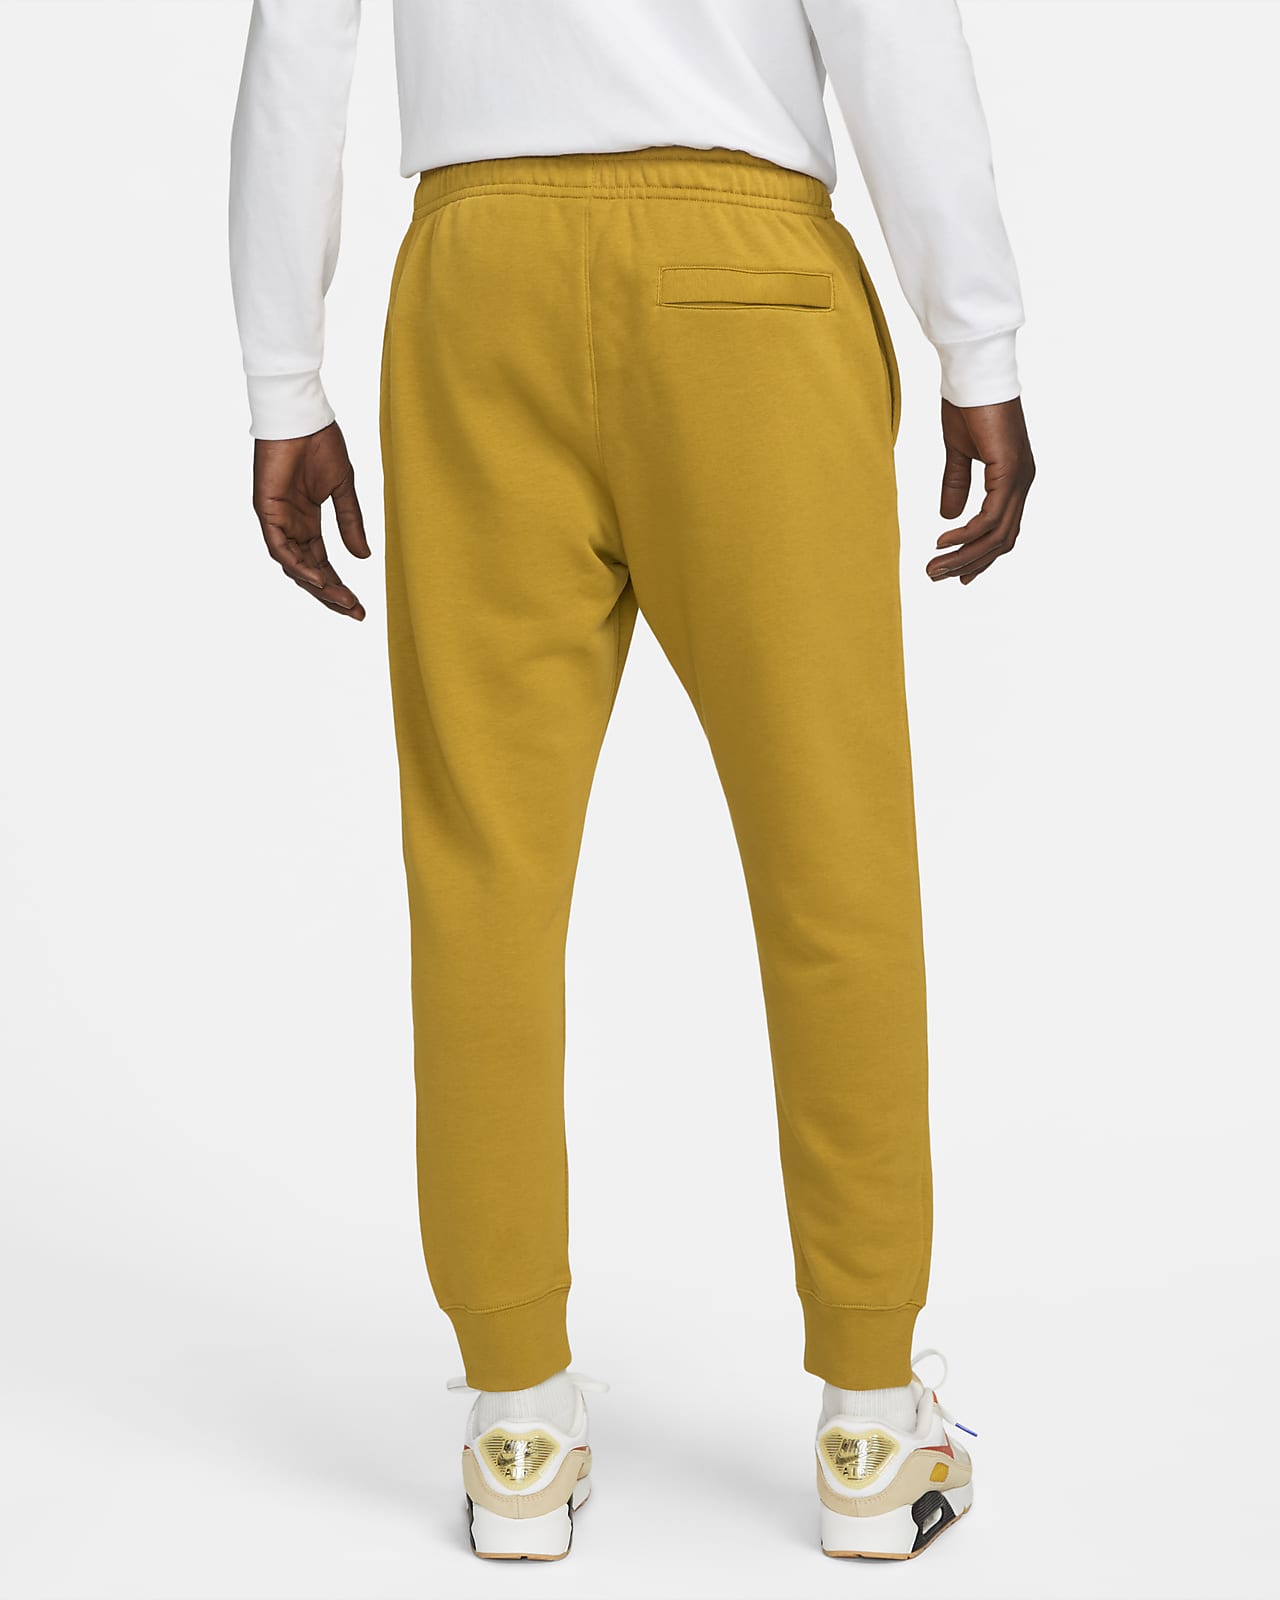 Pantalon de survêtement en molleton Nike Club pour homme. Nike LU